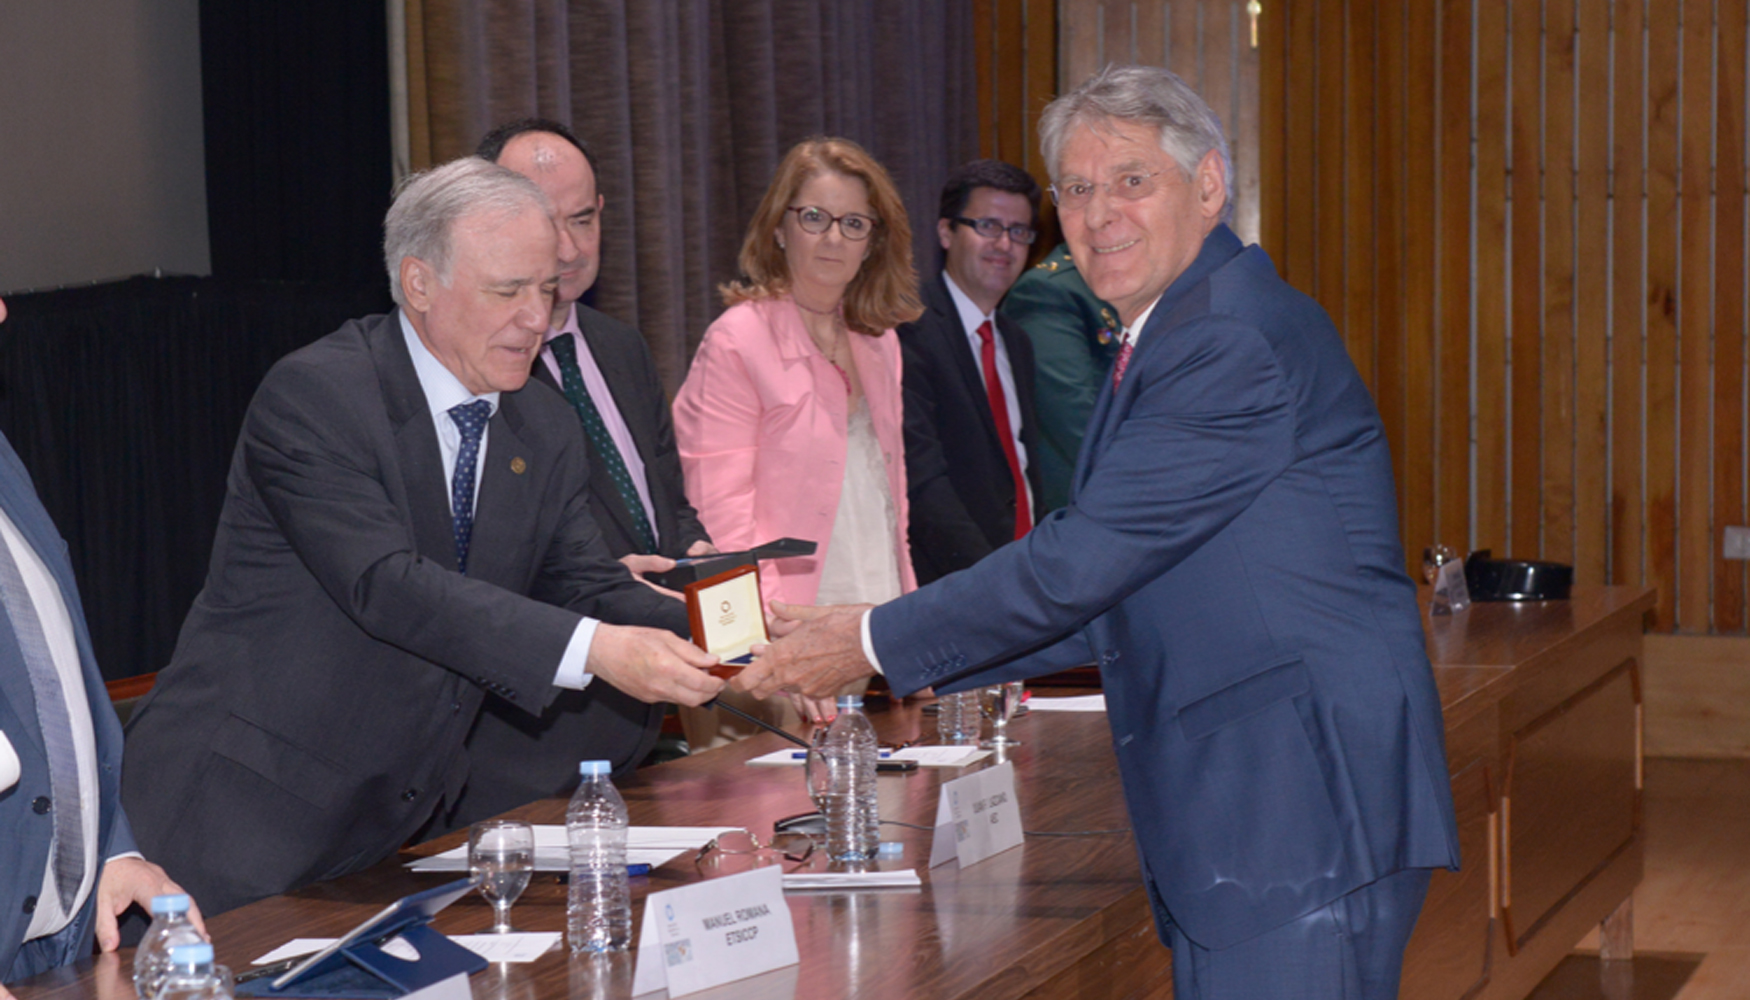 Medalla de la Carretera al Mrito Internacional: Jean-Claude Roff, vicepresidente de la Federacin Europea de Carreteras (ERF)...